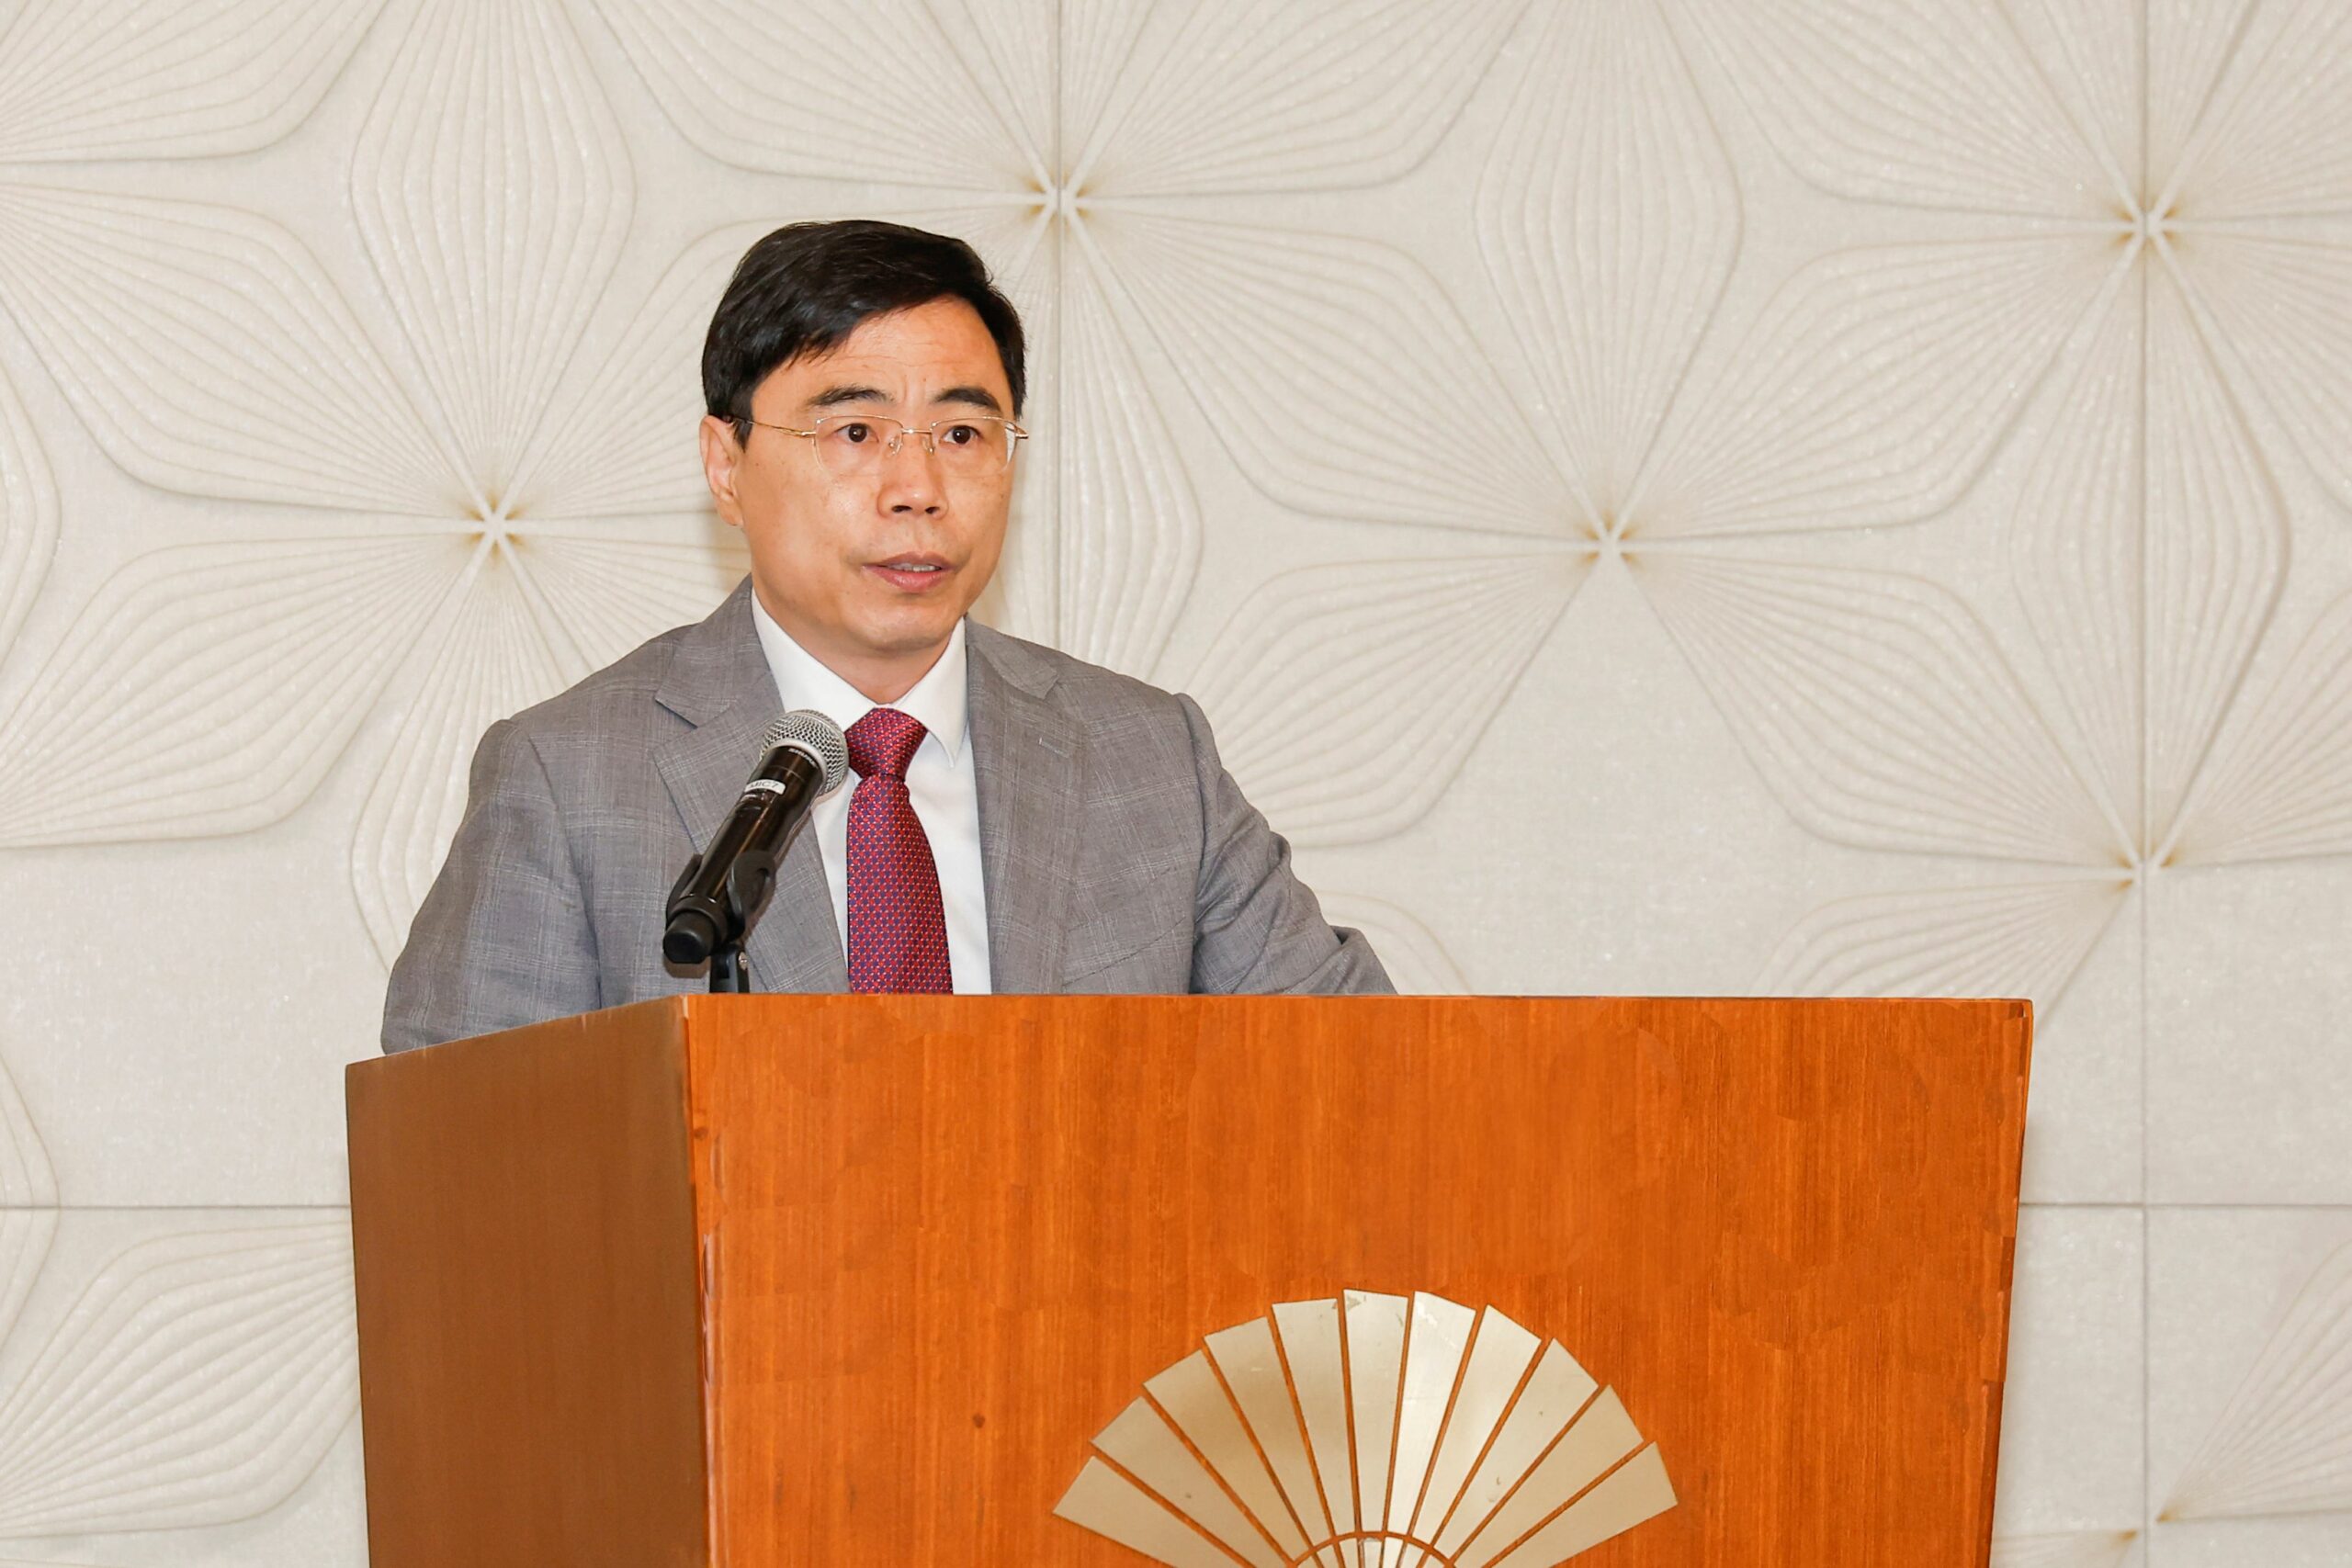 Dirigente do Fórum Macau salienta “pico histórico” de trocas comerciais